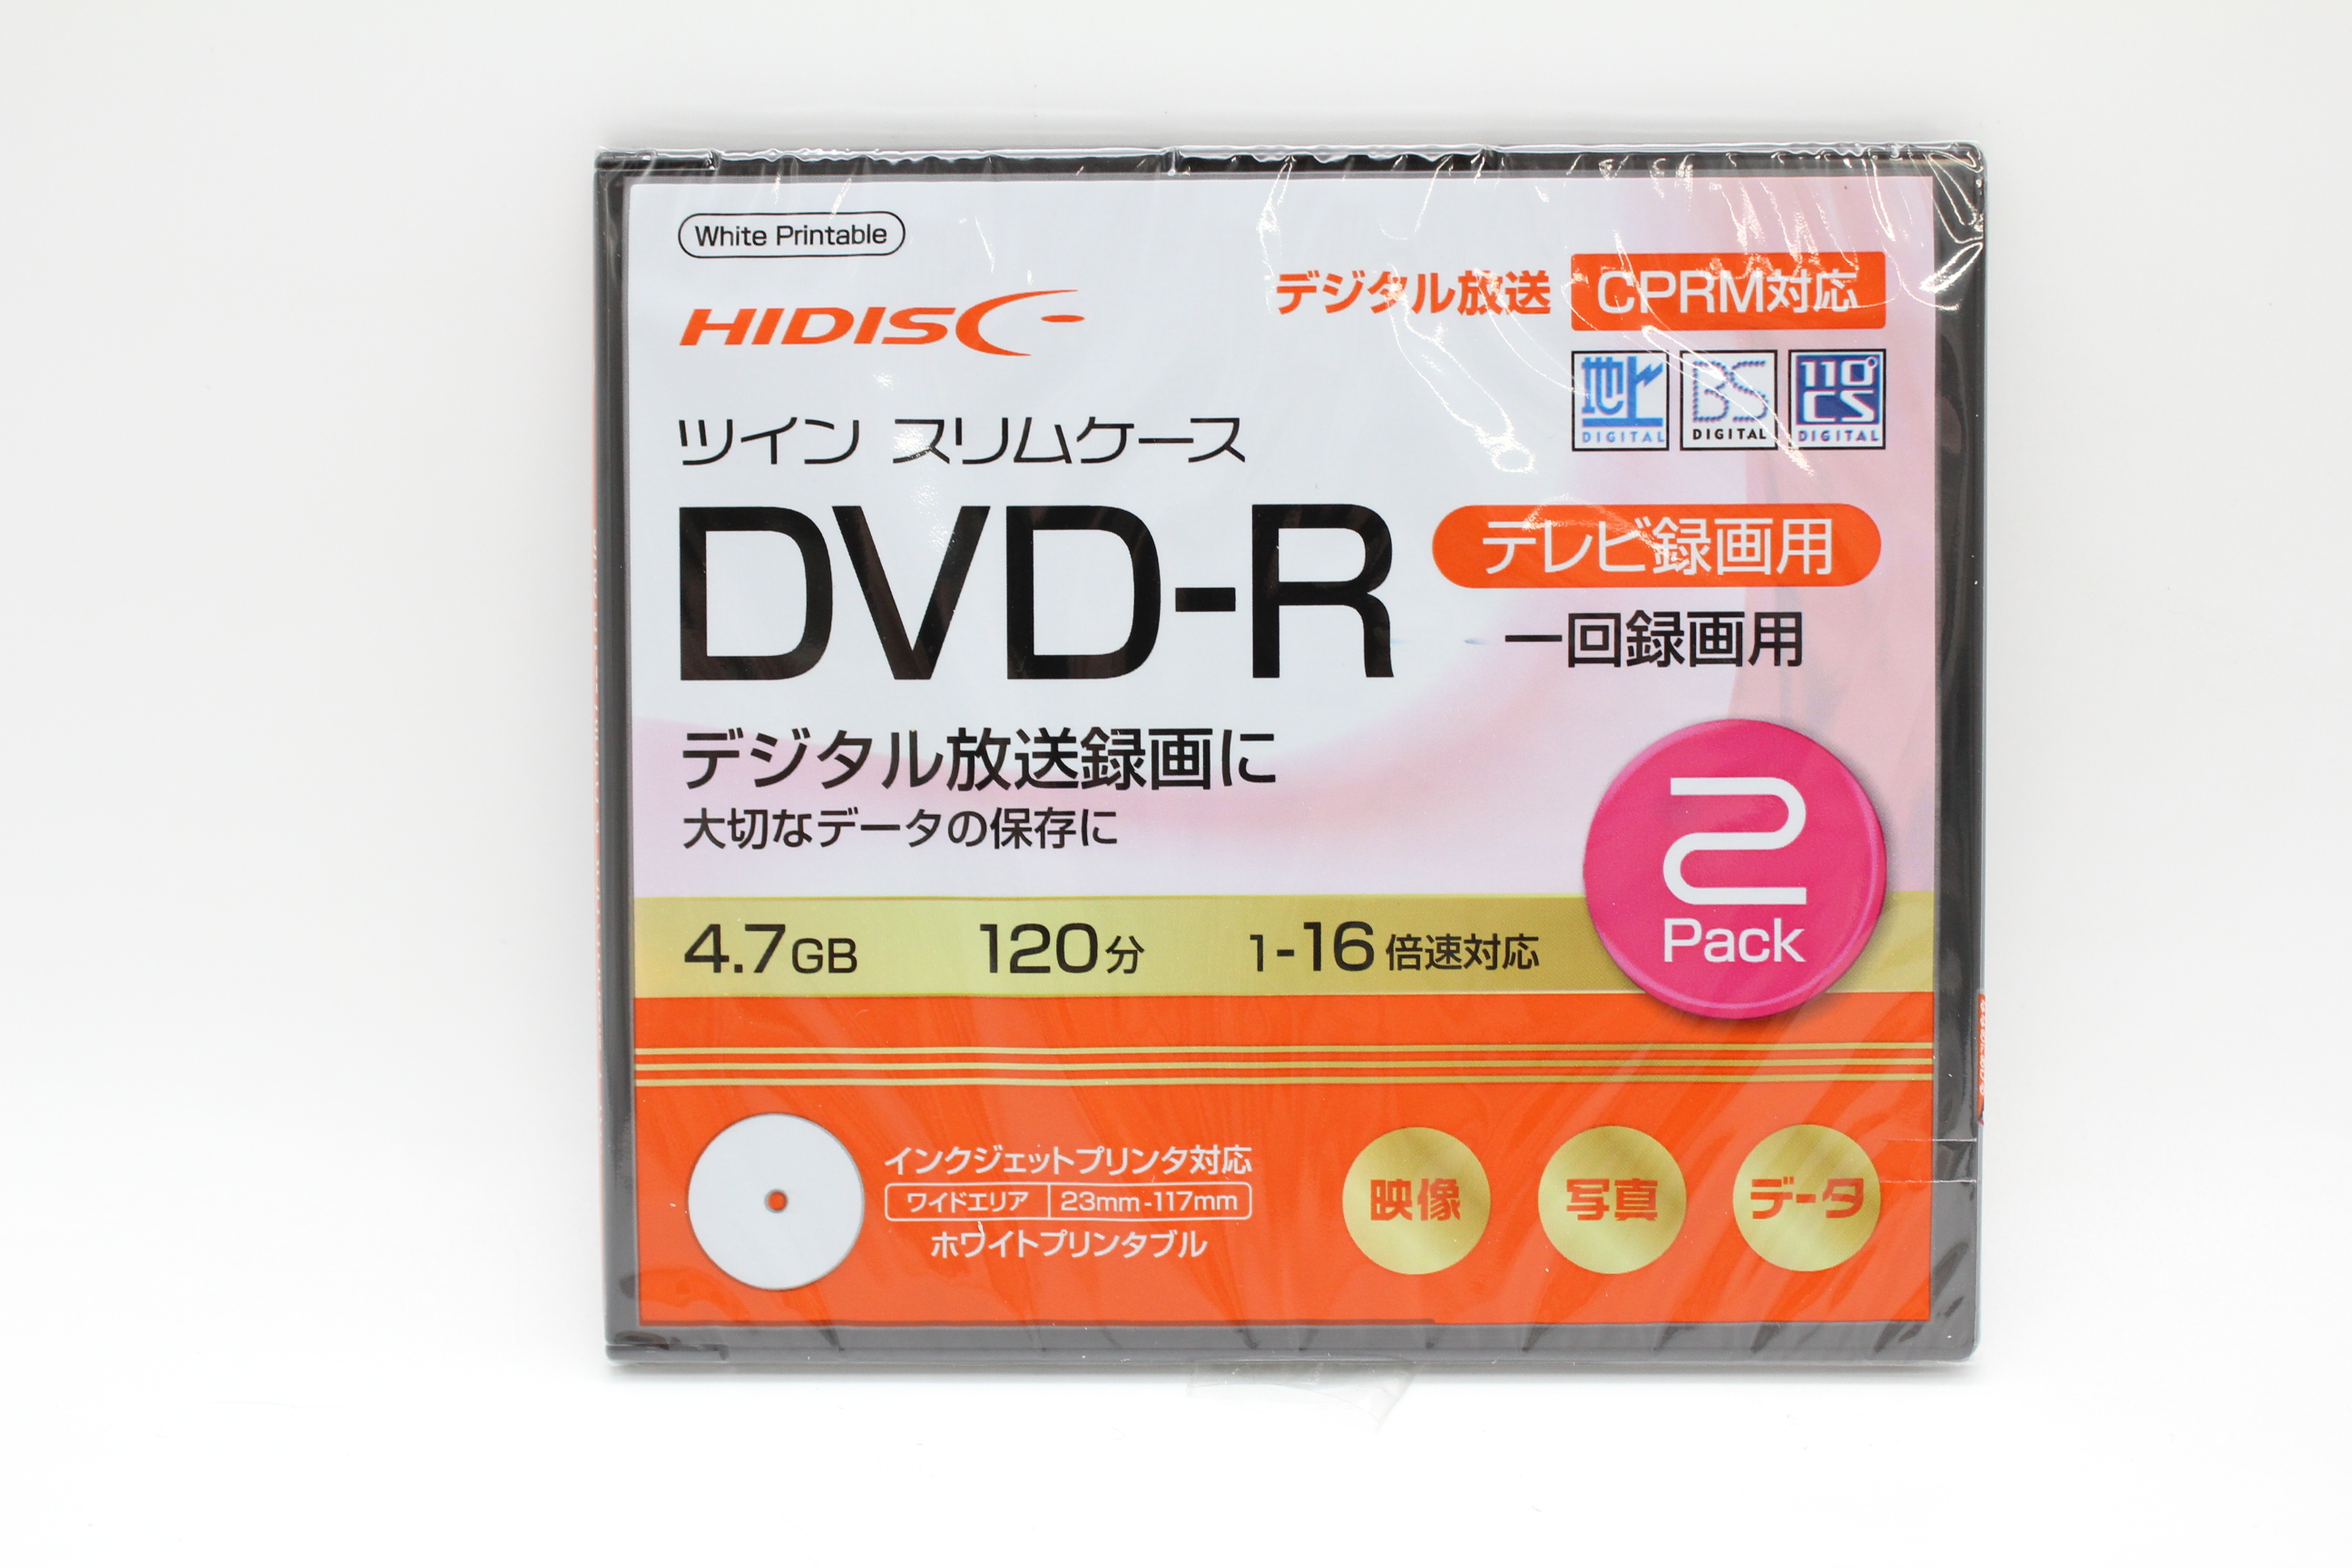 DVD-R 120分 16倍速録画用2枚入